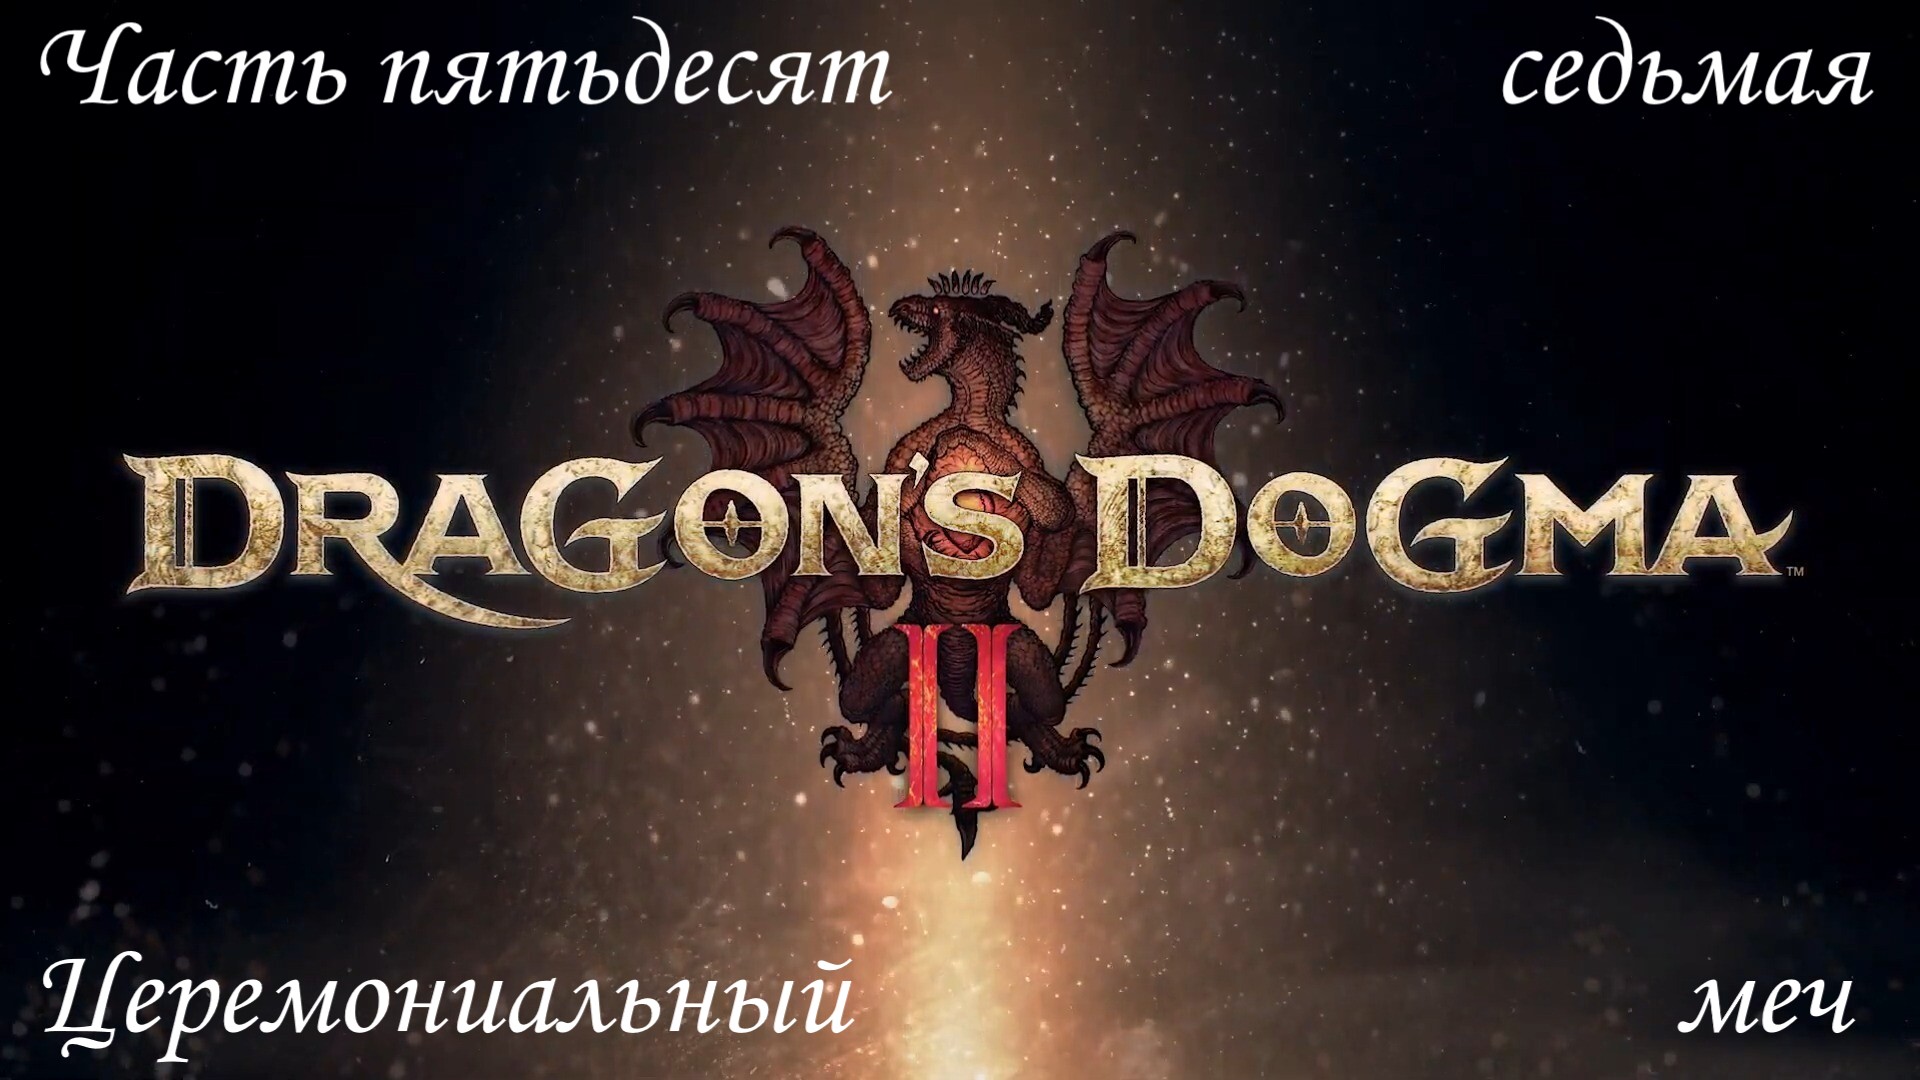 Прохождение Dragon's Dogma 2 на русском - Часть пятьдесят седьмая. Церемониальный меч